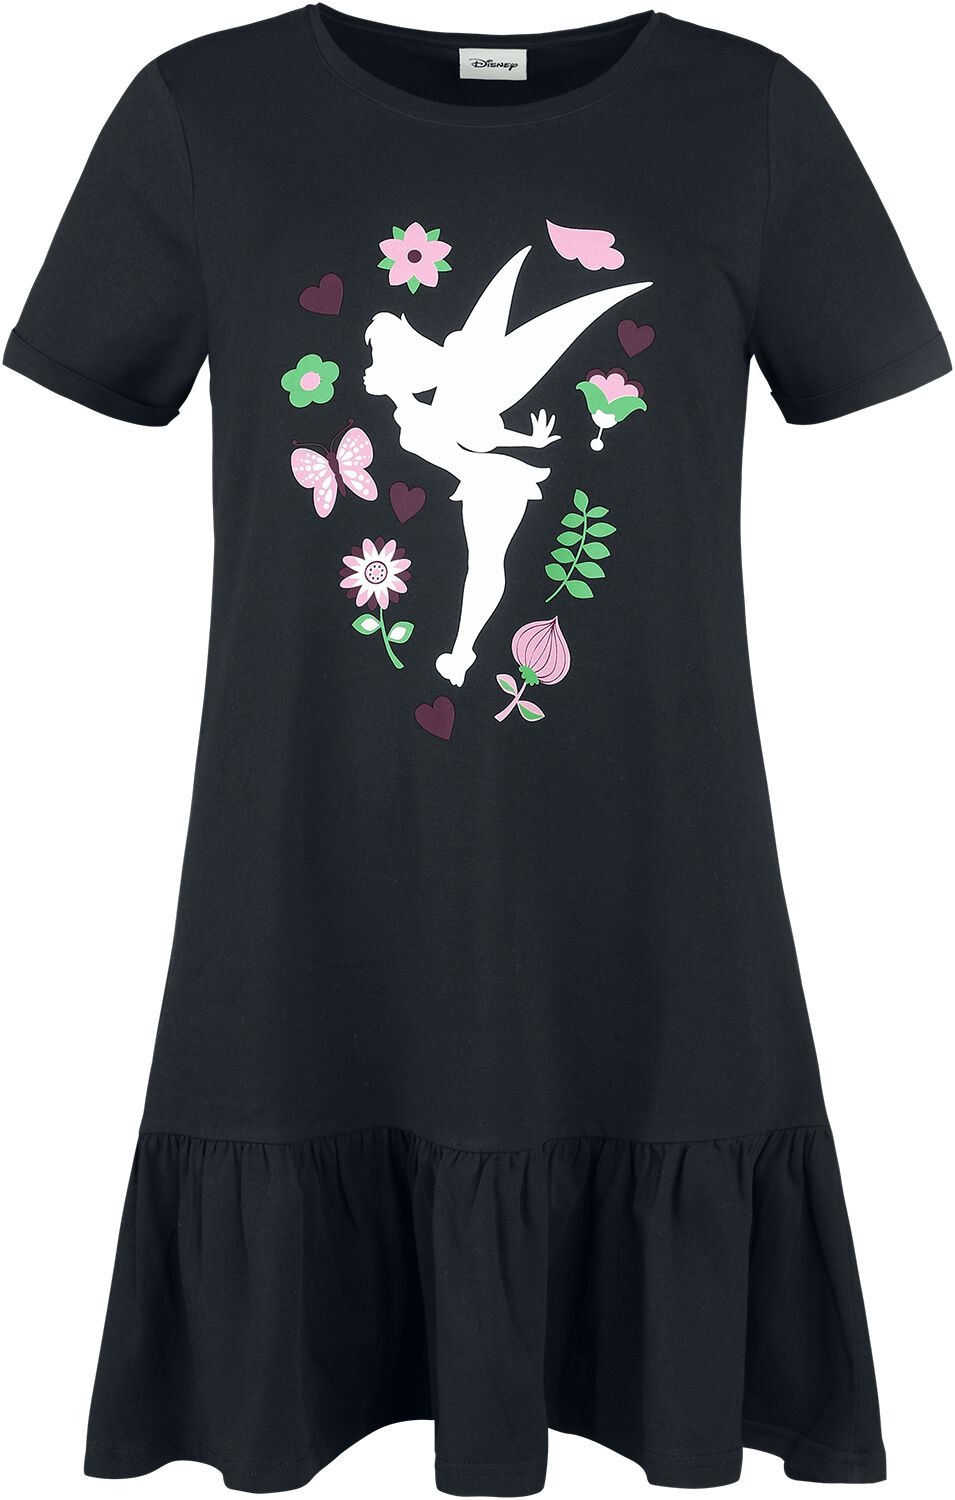 Peter Pan - Disney Kleid lang - Tinker Bell - Flower - S bis L - für Damen - Größe S - schwarz  - EMP exklusives Merchandise!